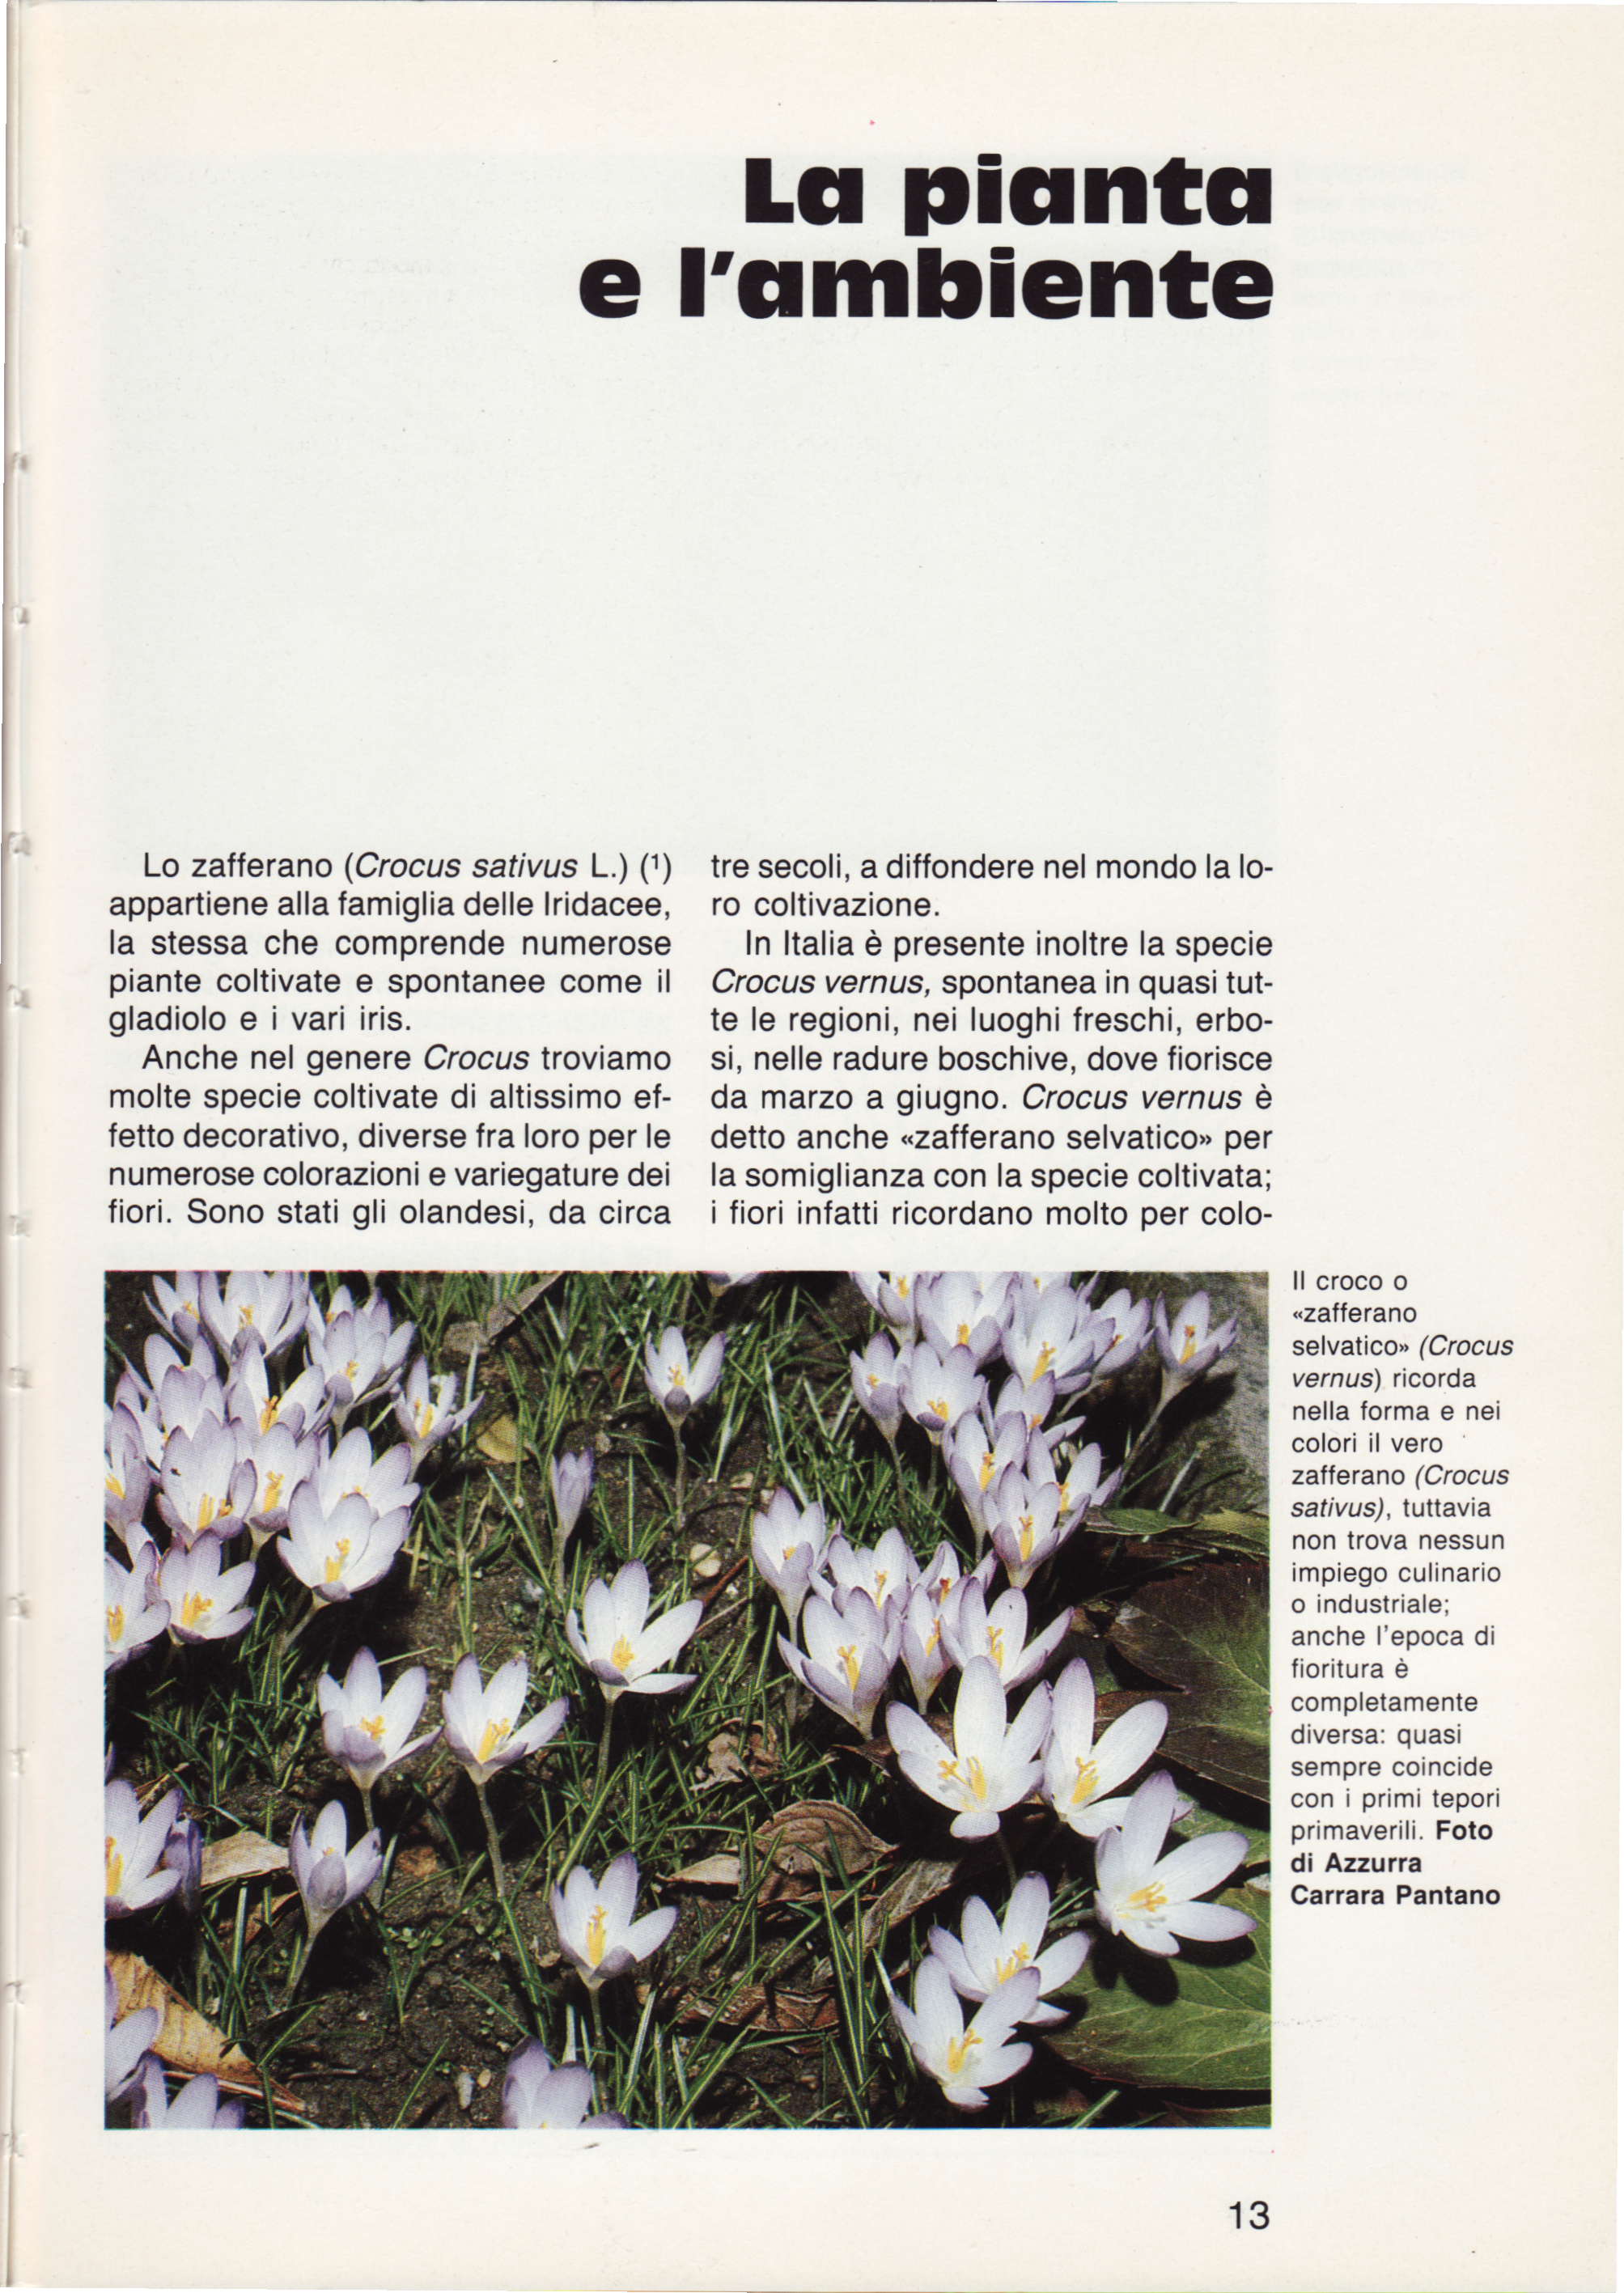 LGr picrntll e I'qmhiente Lo zafferano (Crocus safivus L.) (t) appartiene alla famiglia delle lridacee, la stessa che comprende numerose piante coltivate e spontanee come il gladioloeivari iris.